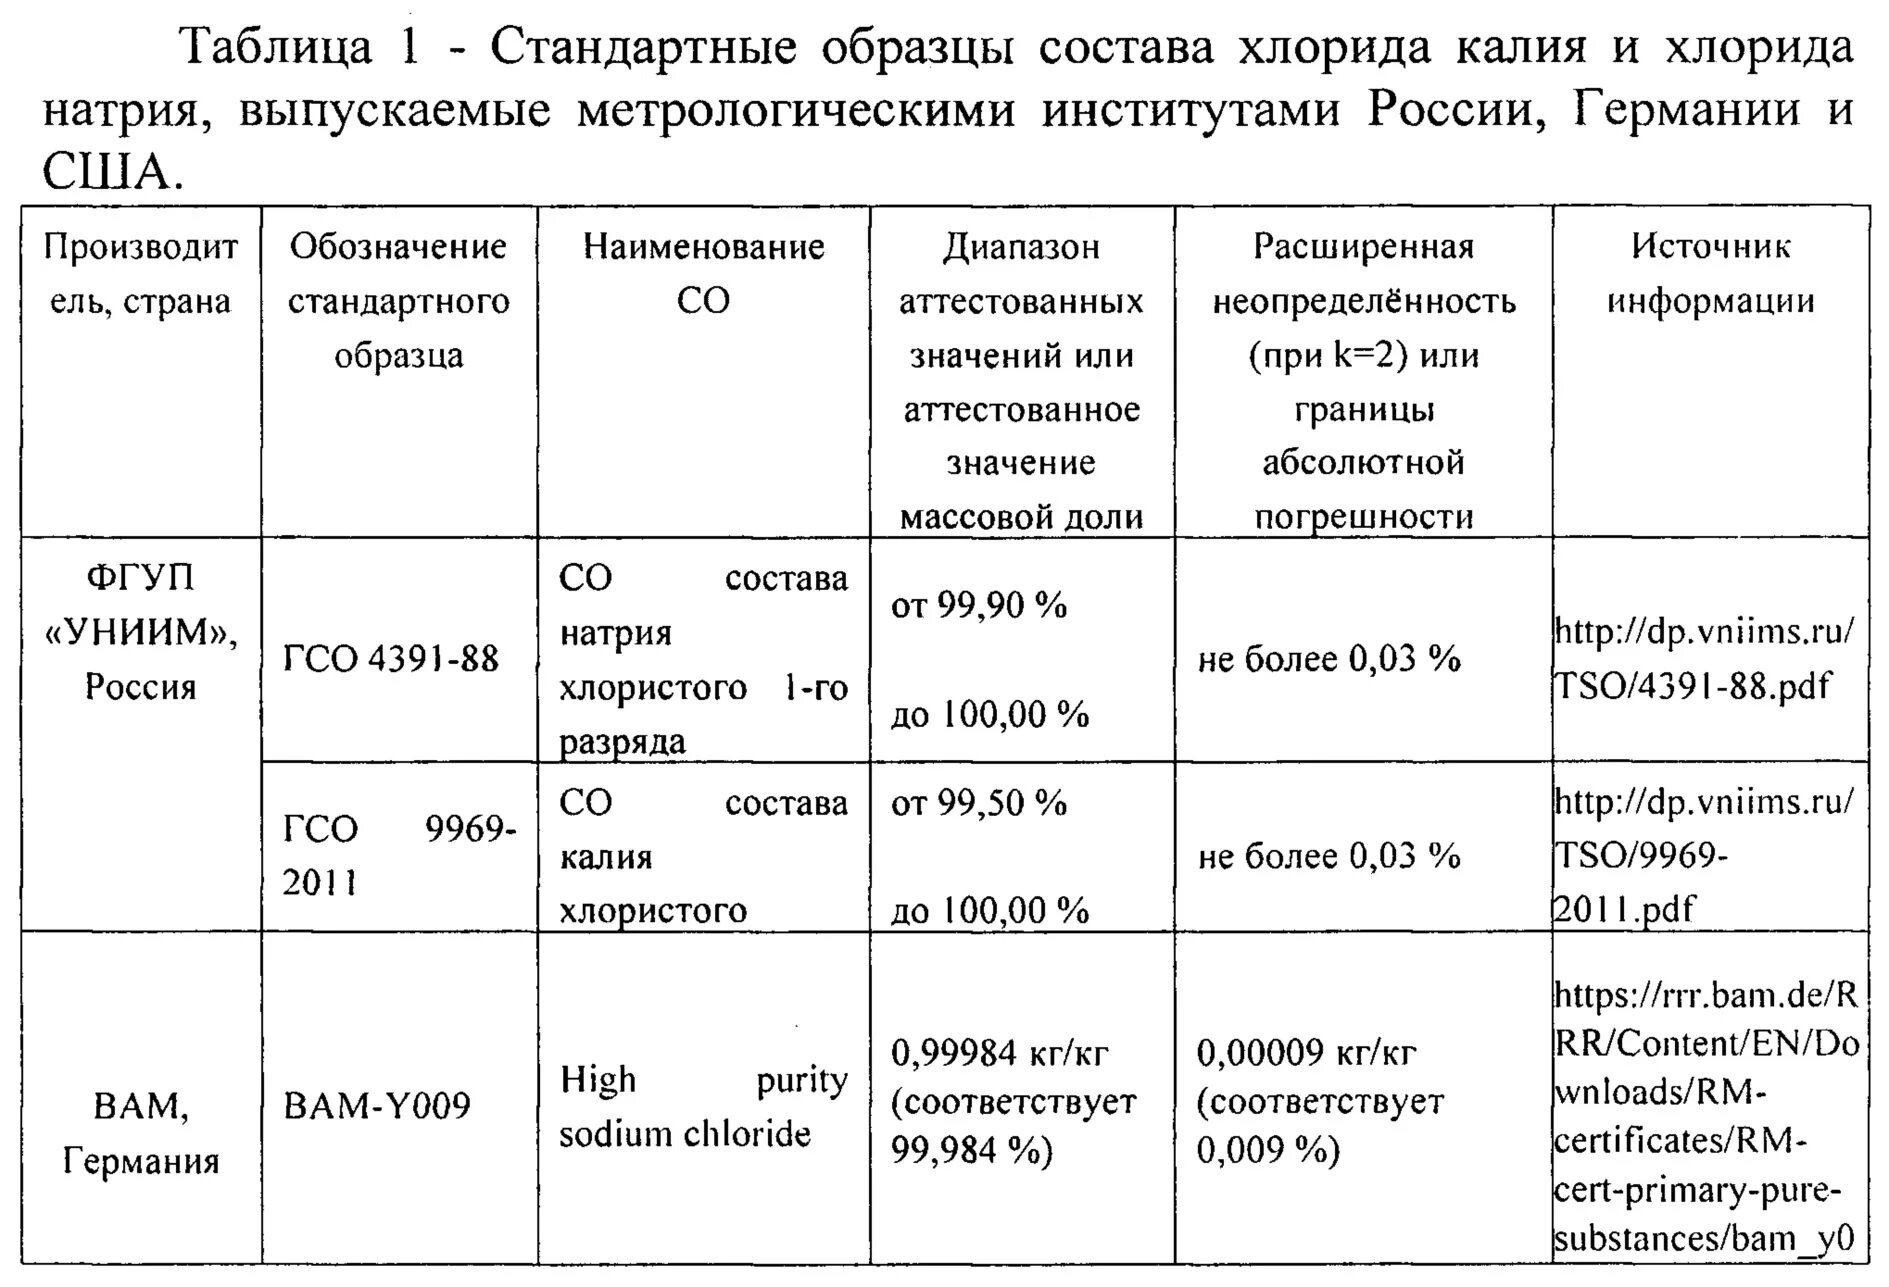 Сравнительная характеристика методов определения натрия и калия.. ГСО 4391-88 натрий хлористый. Стандартный образец это. Методы определения натрия и калия.